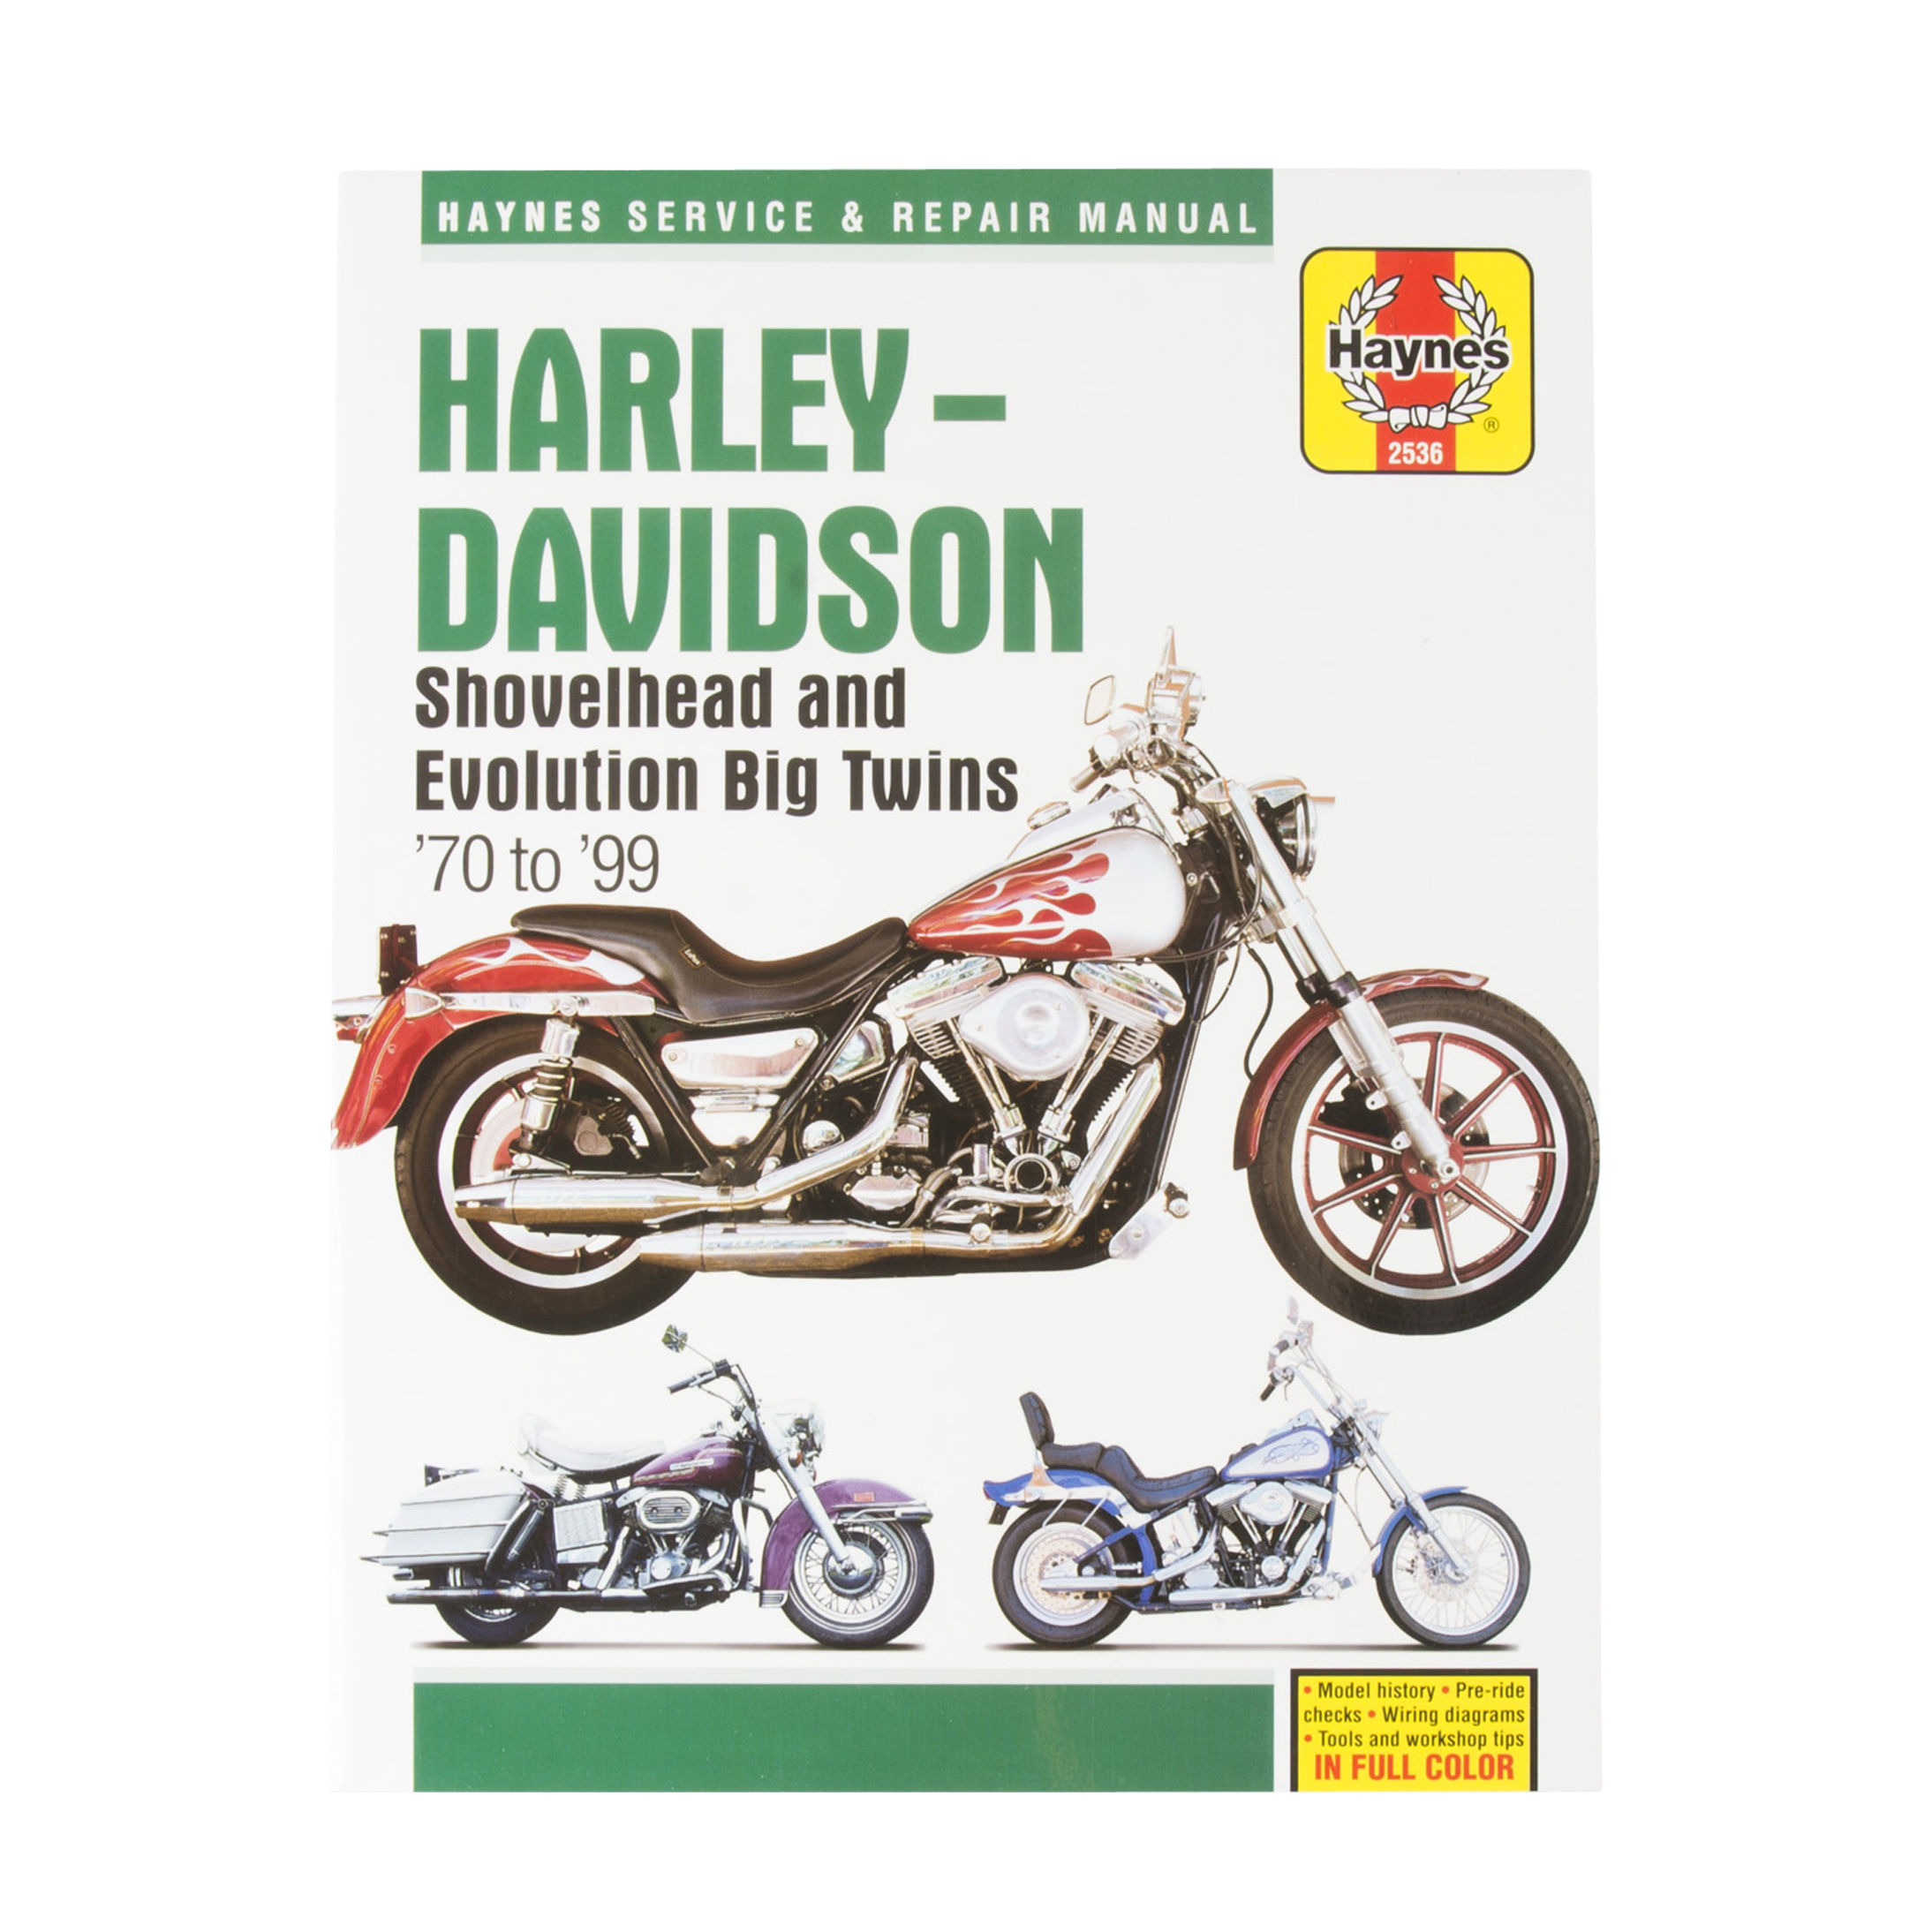 Haynes Harley Davidson Repair Manual Search By Model Lowest Price Guarantee 24mx Eu